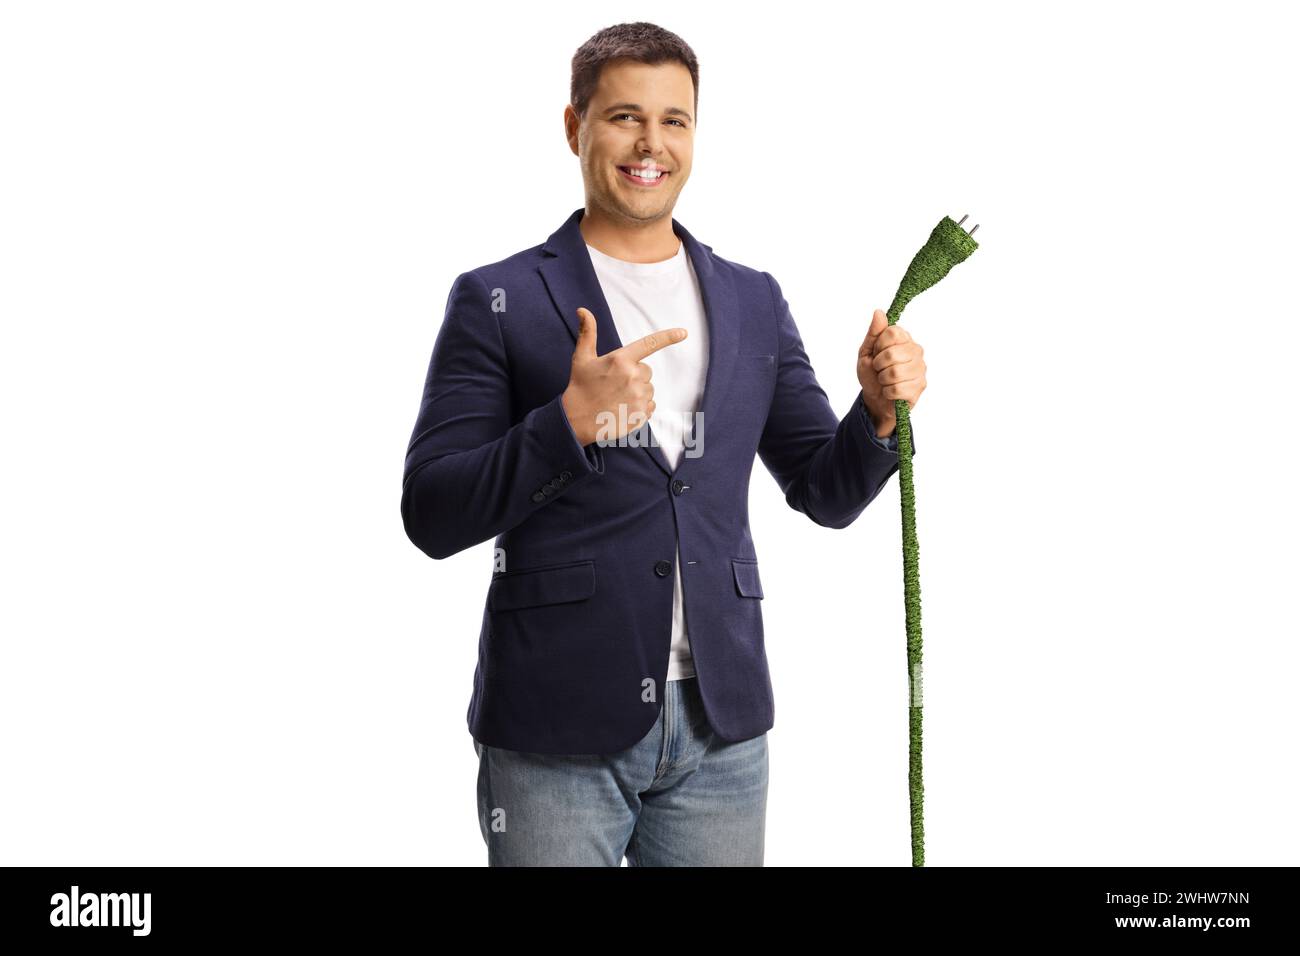 Hombre joven feliz apuntando a un cable eléctrico verde aislado sobre fondo blanco Foto de stock